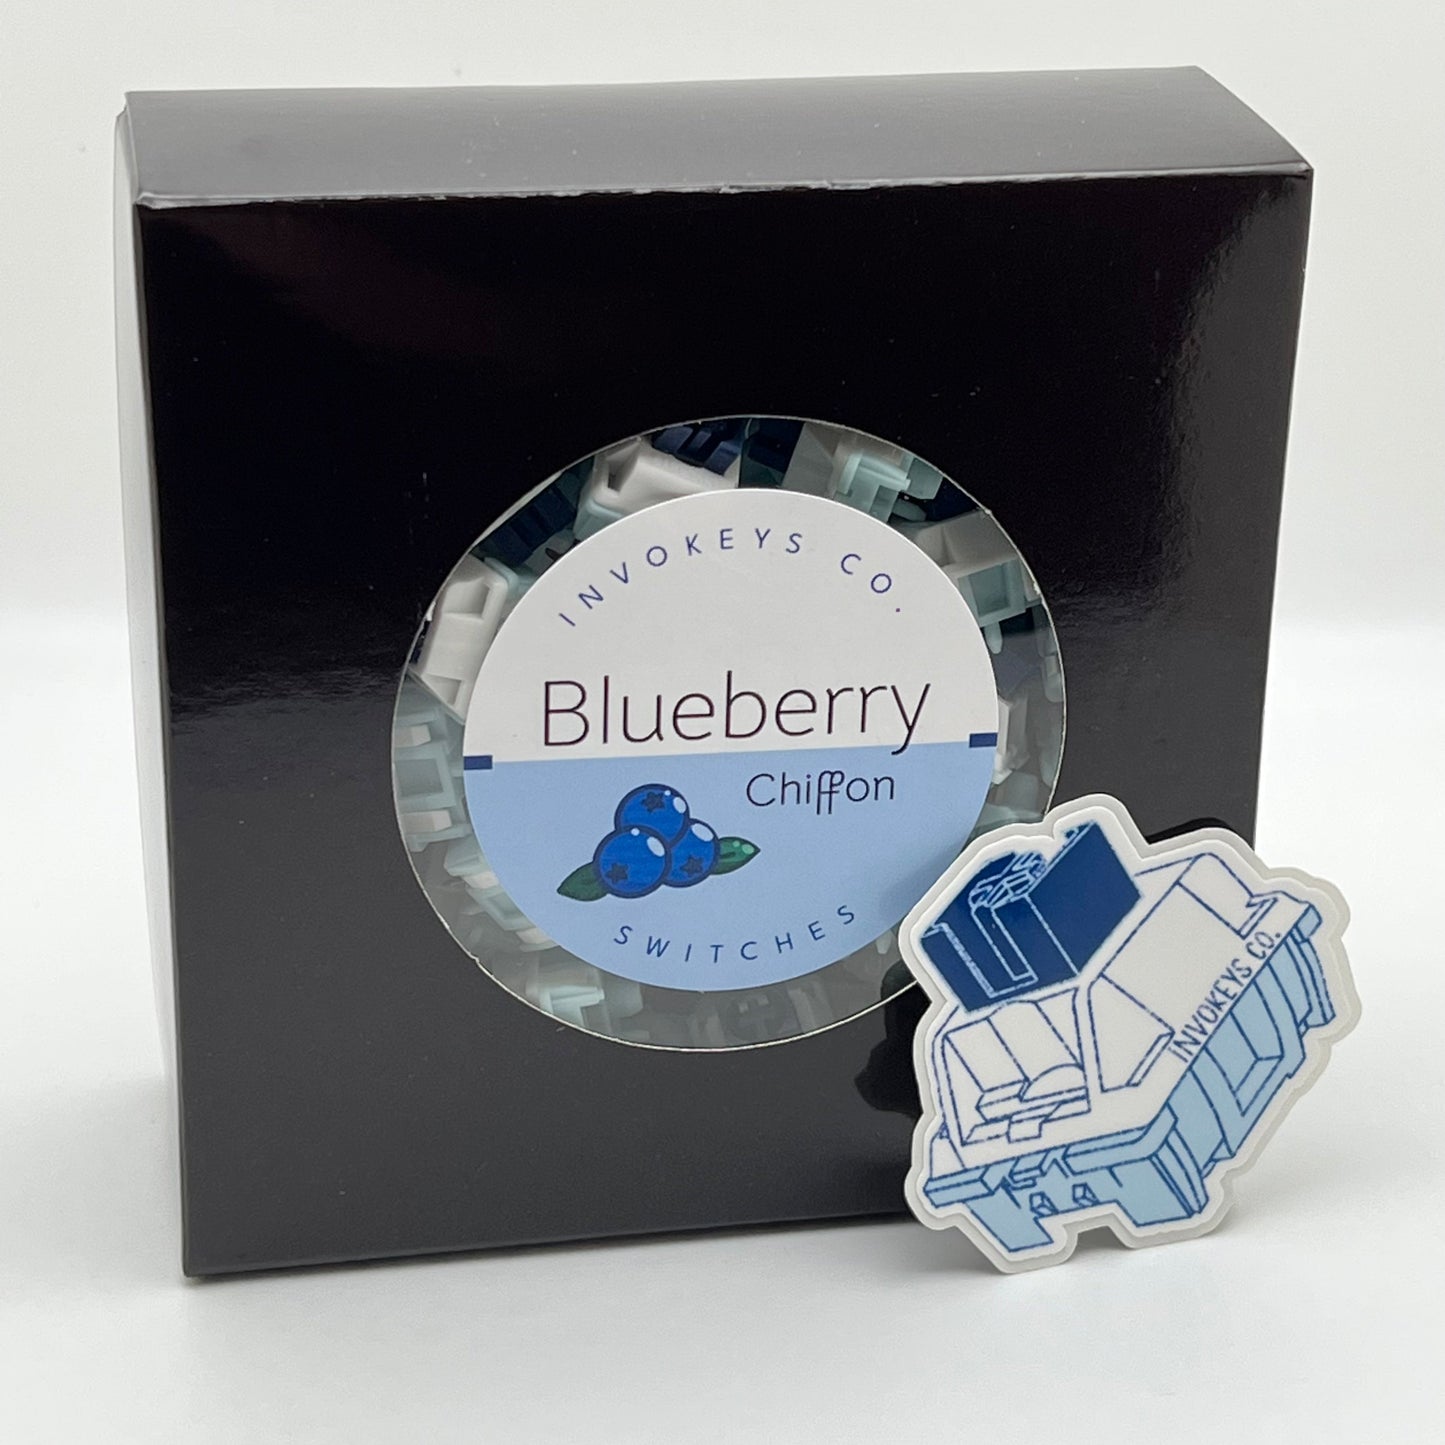 Invokeys Blueberry Chiffon Switches - Clearance